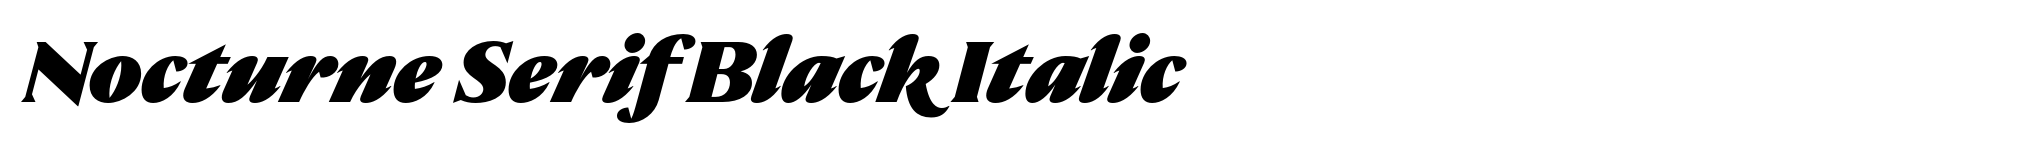 Nocturne Serif Black Italic image